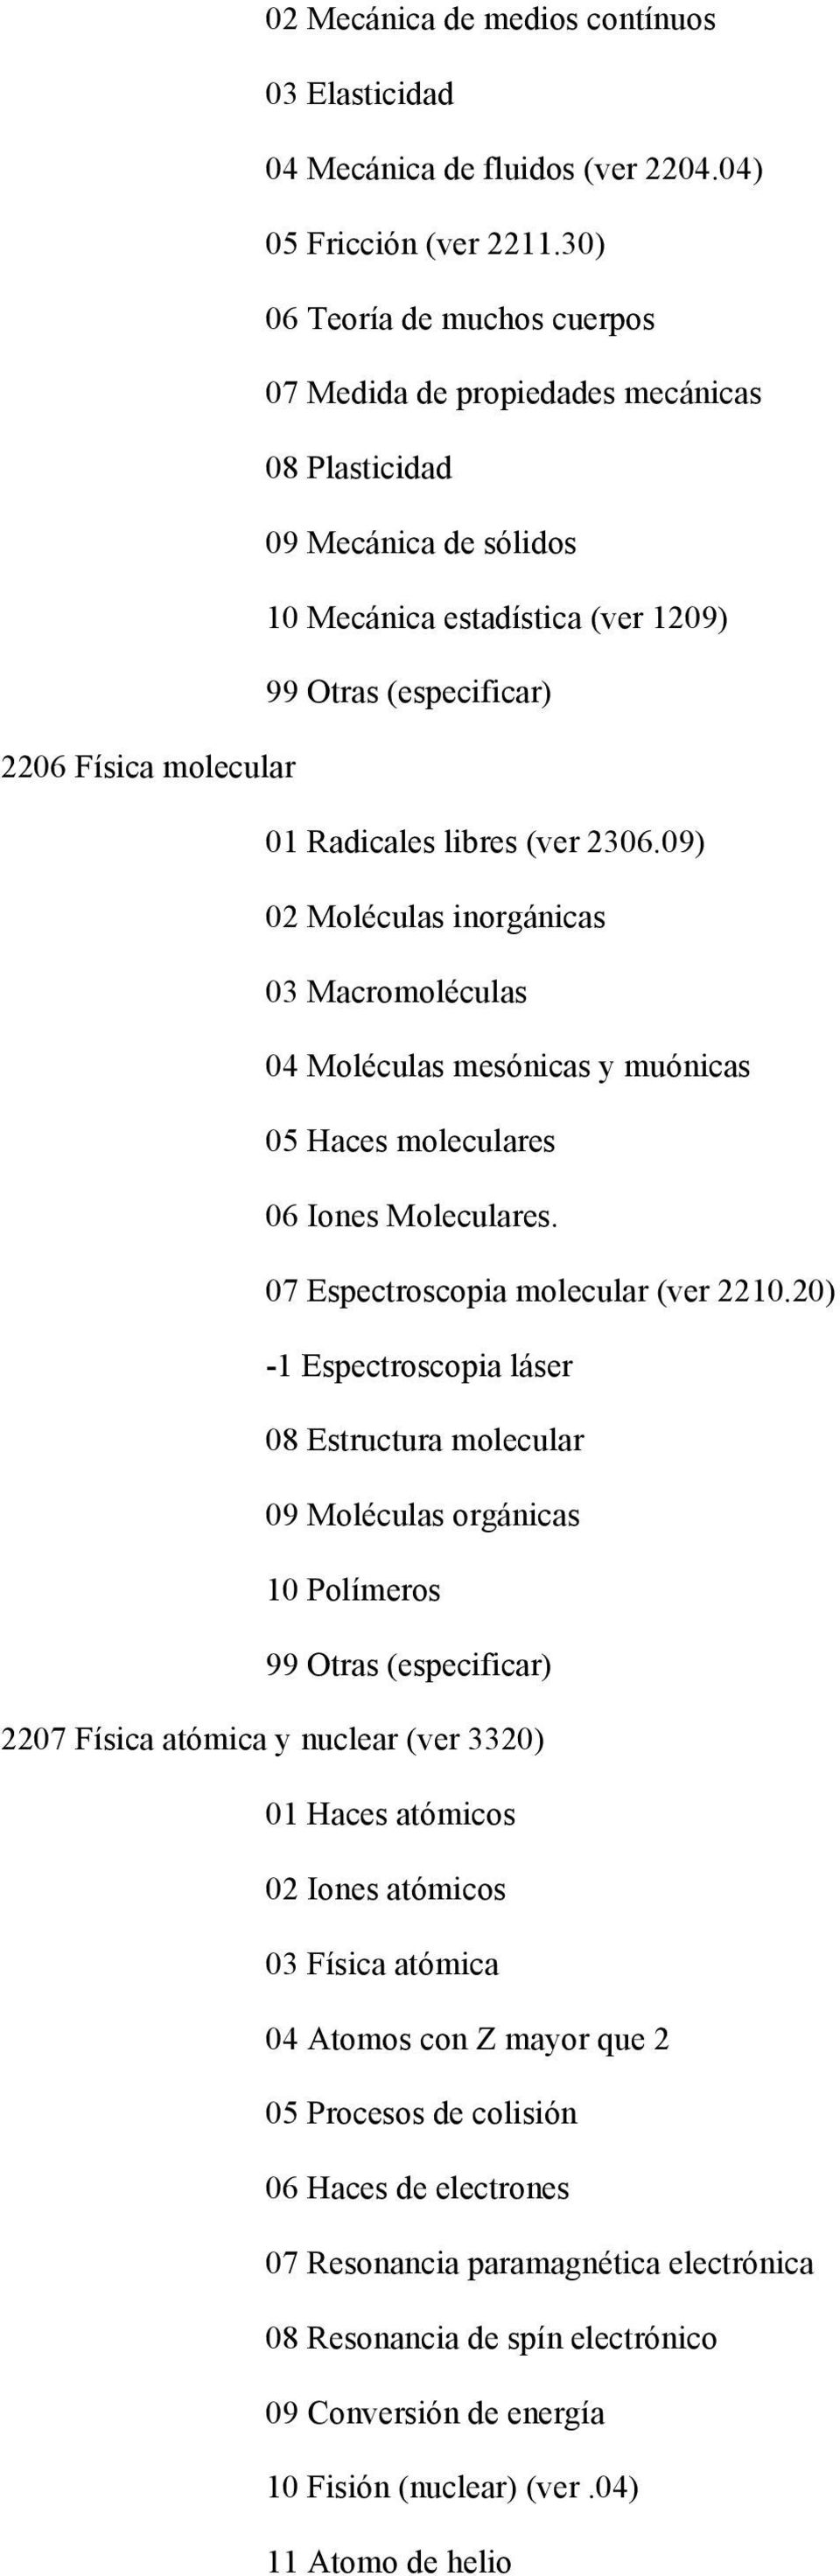 09) 02 Moléculas inorgánicas 03 Macromoléculas 04 Moléculas mesónicas y muónicas 05 Haces moleculares 06 Iones Moleculares. 07 Espectroscopia molecular (ver 2210.